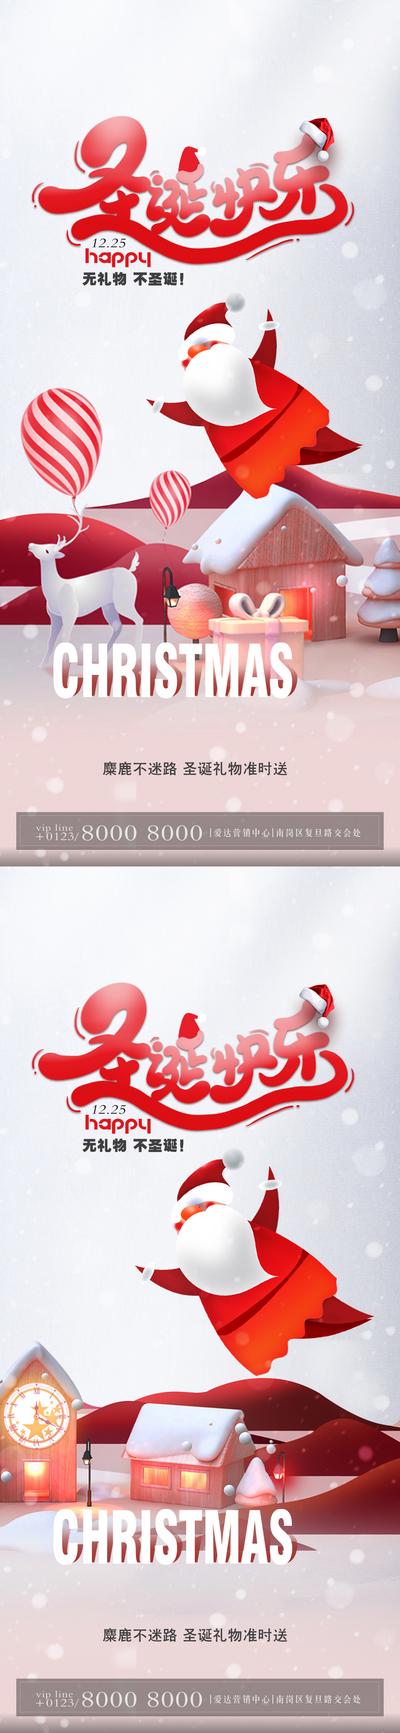 南门网 海报 房地产 公历节日 圣诞节 圣诞老人 插画